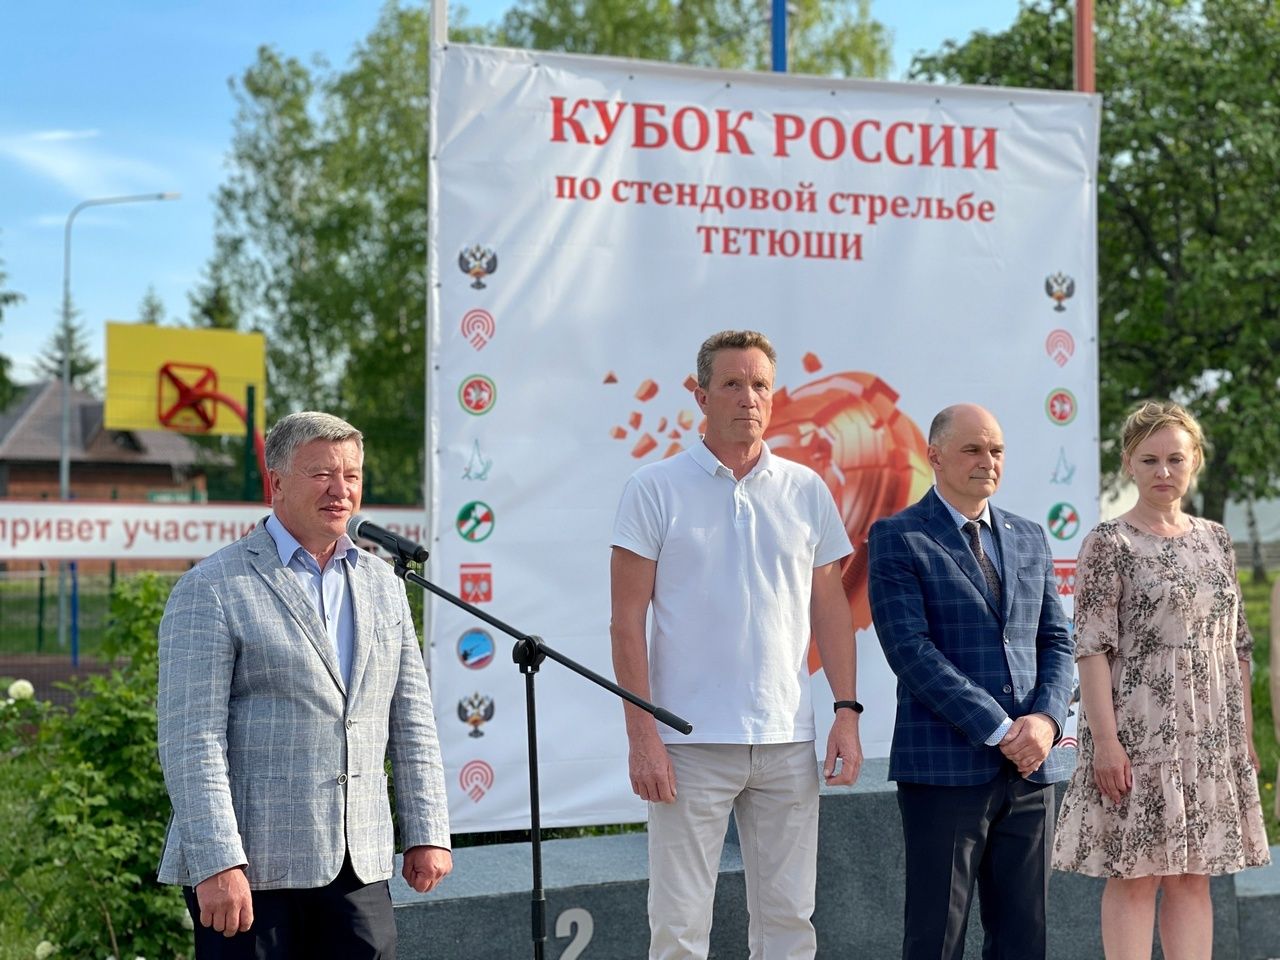 В Тетюшах состоялось открытие 2 этапа Кубка России по стендовой стрельбе